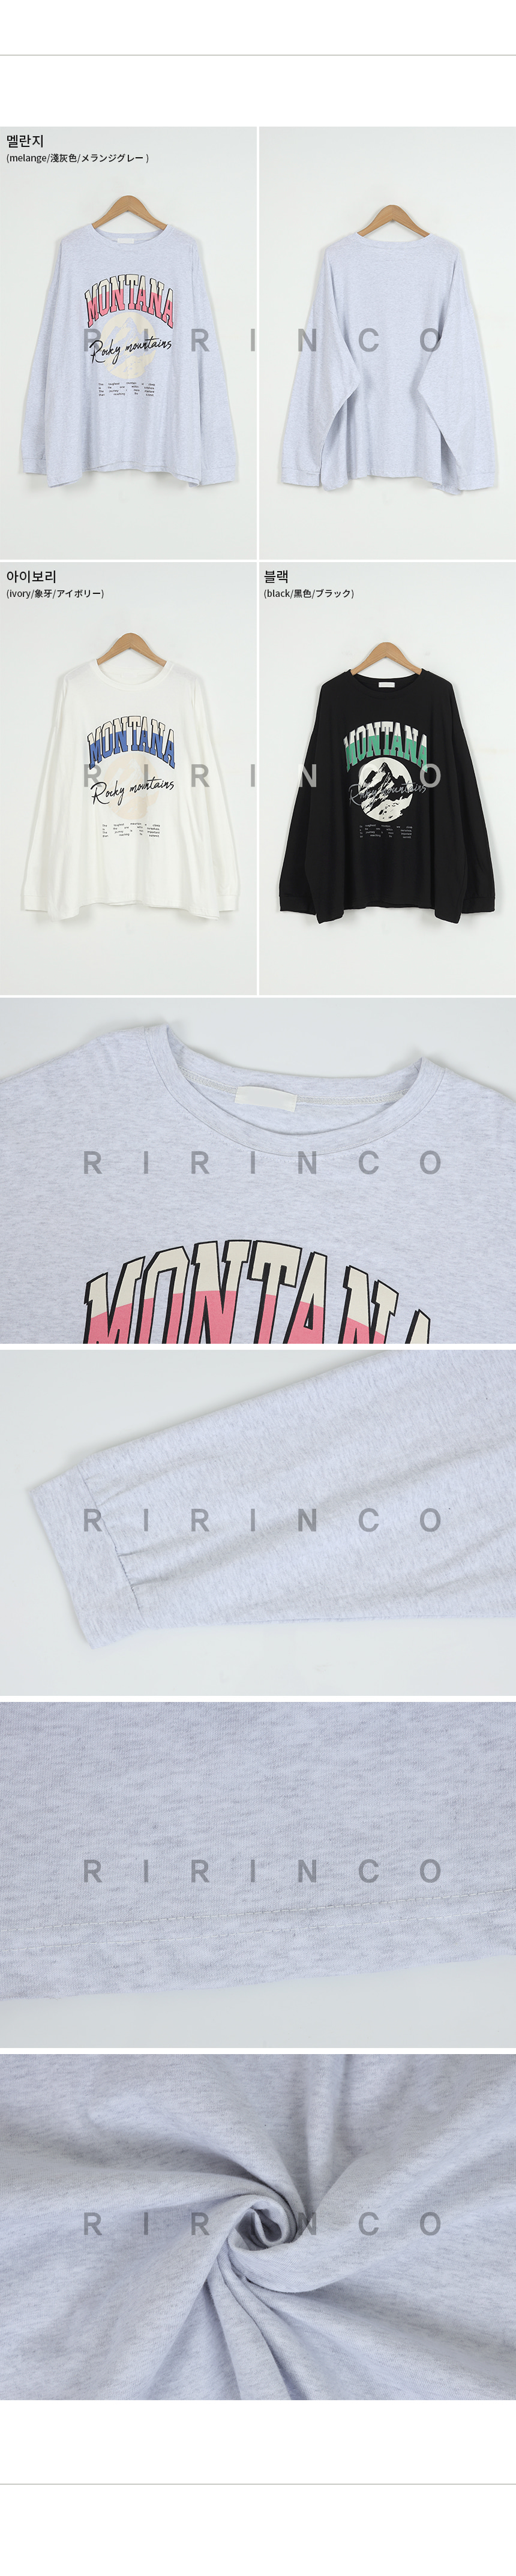 RIRINCO 英字ロゴプリントルーズフィットTシャツ